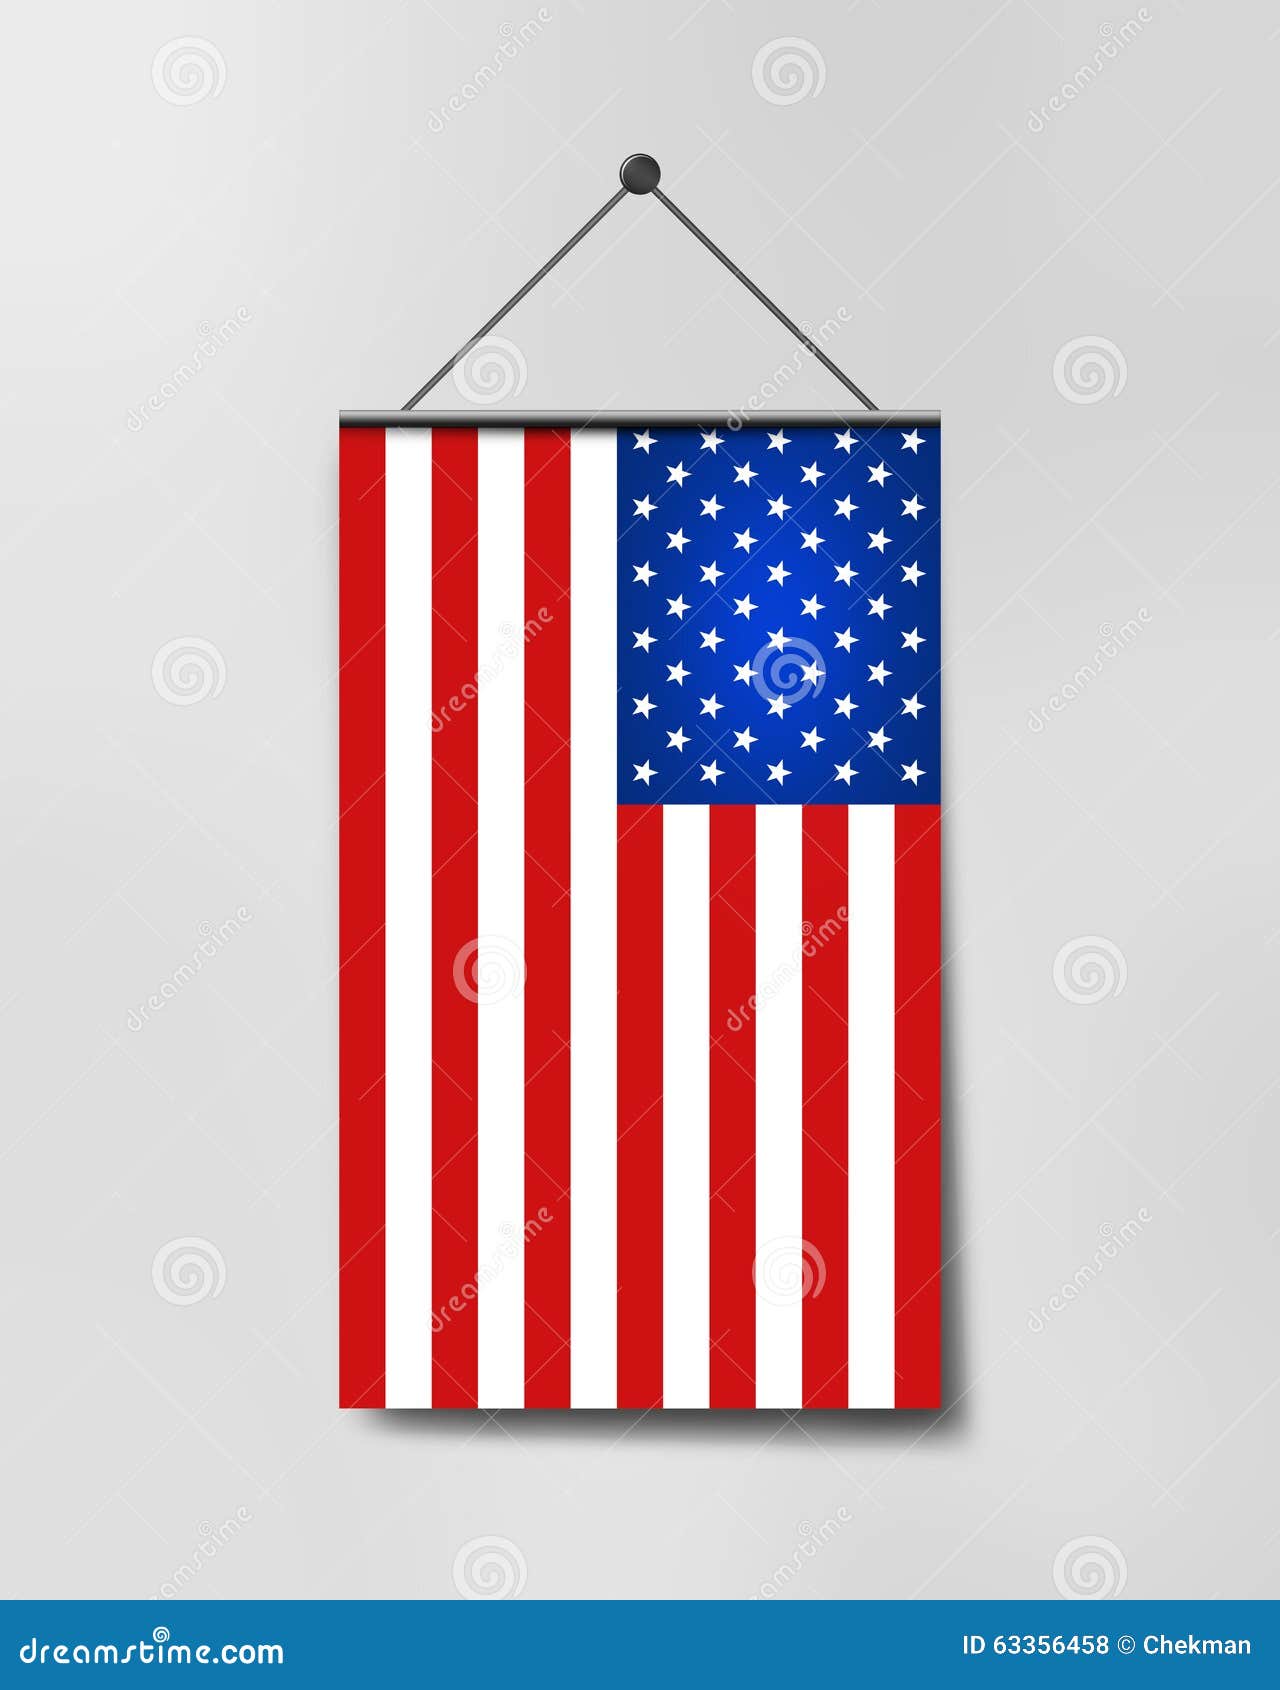 Vertical hanging US flag stock illustration. Illustration of strip -  63356458